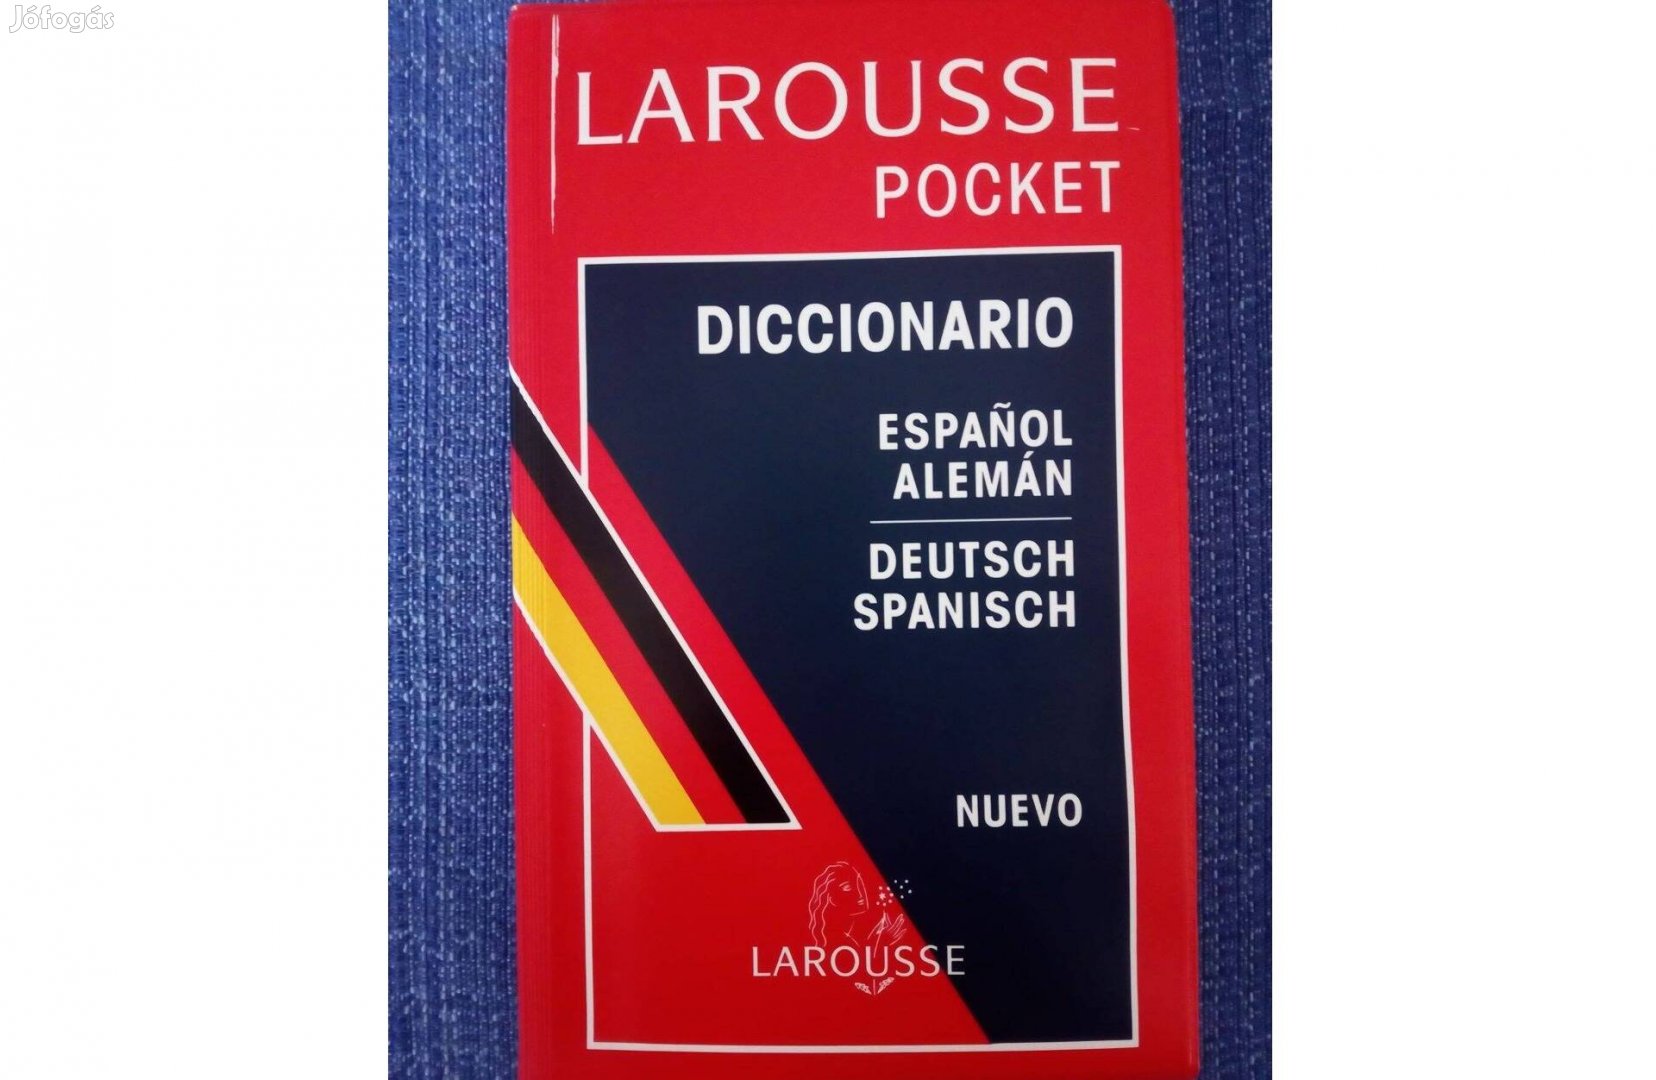 Larousse Pocket Diccionario espanol-alemán / Deutsch-Spanisch